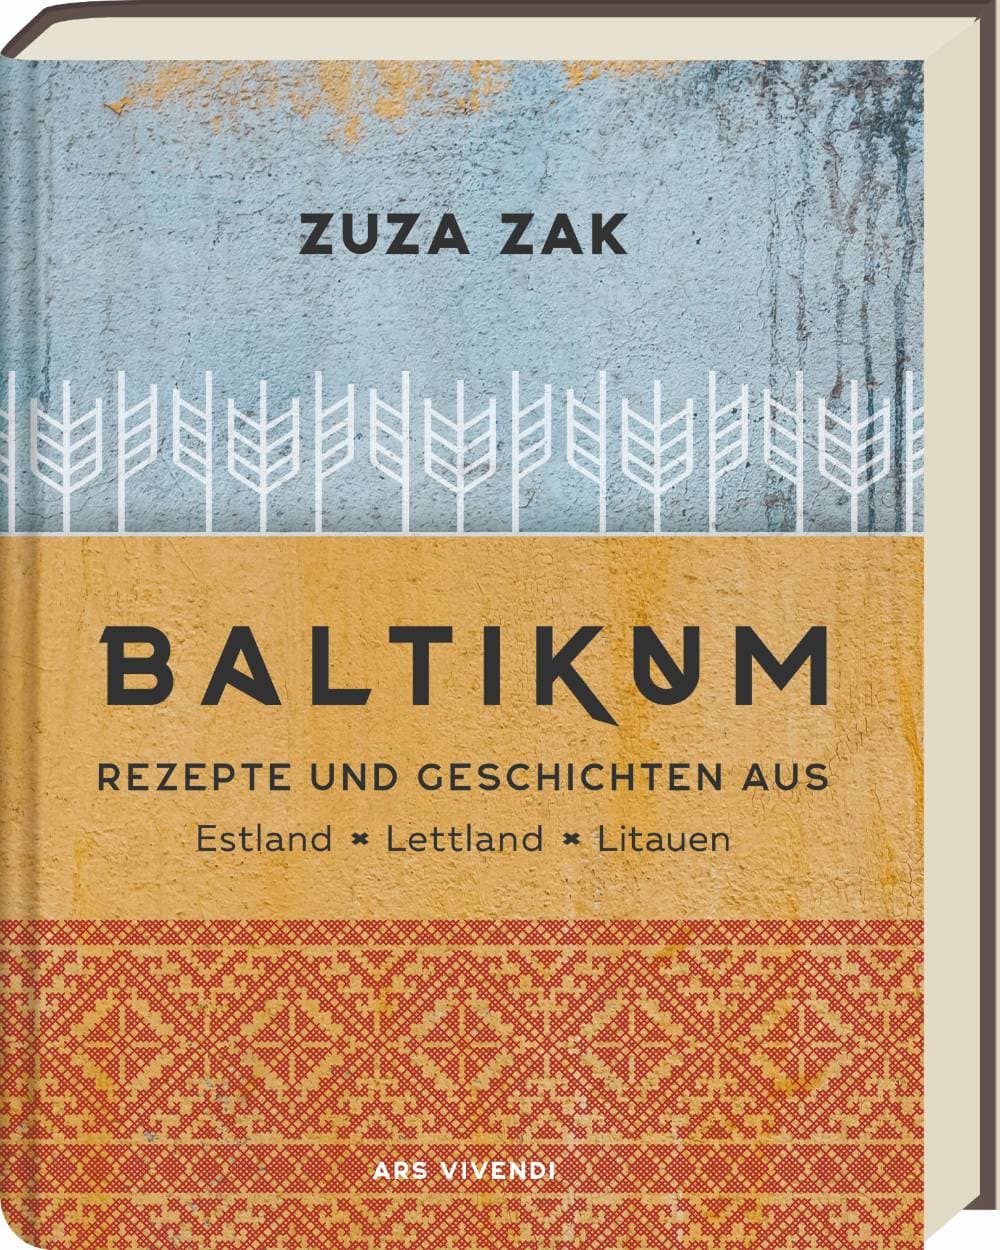 Das Buchcover zum Kochbuch Baltikum von Zuza Zak.